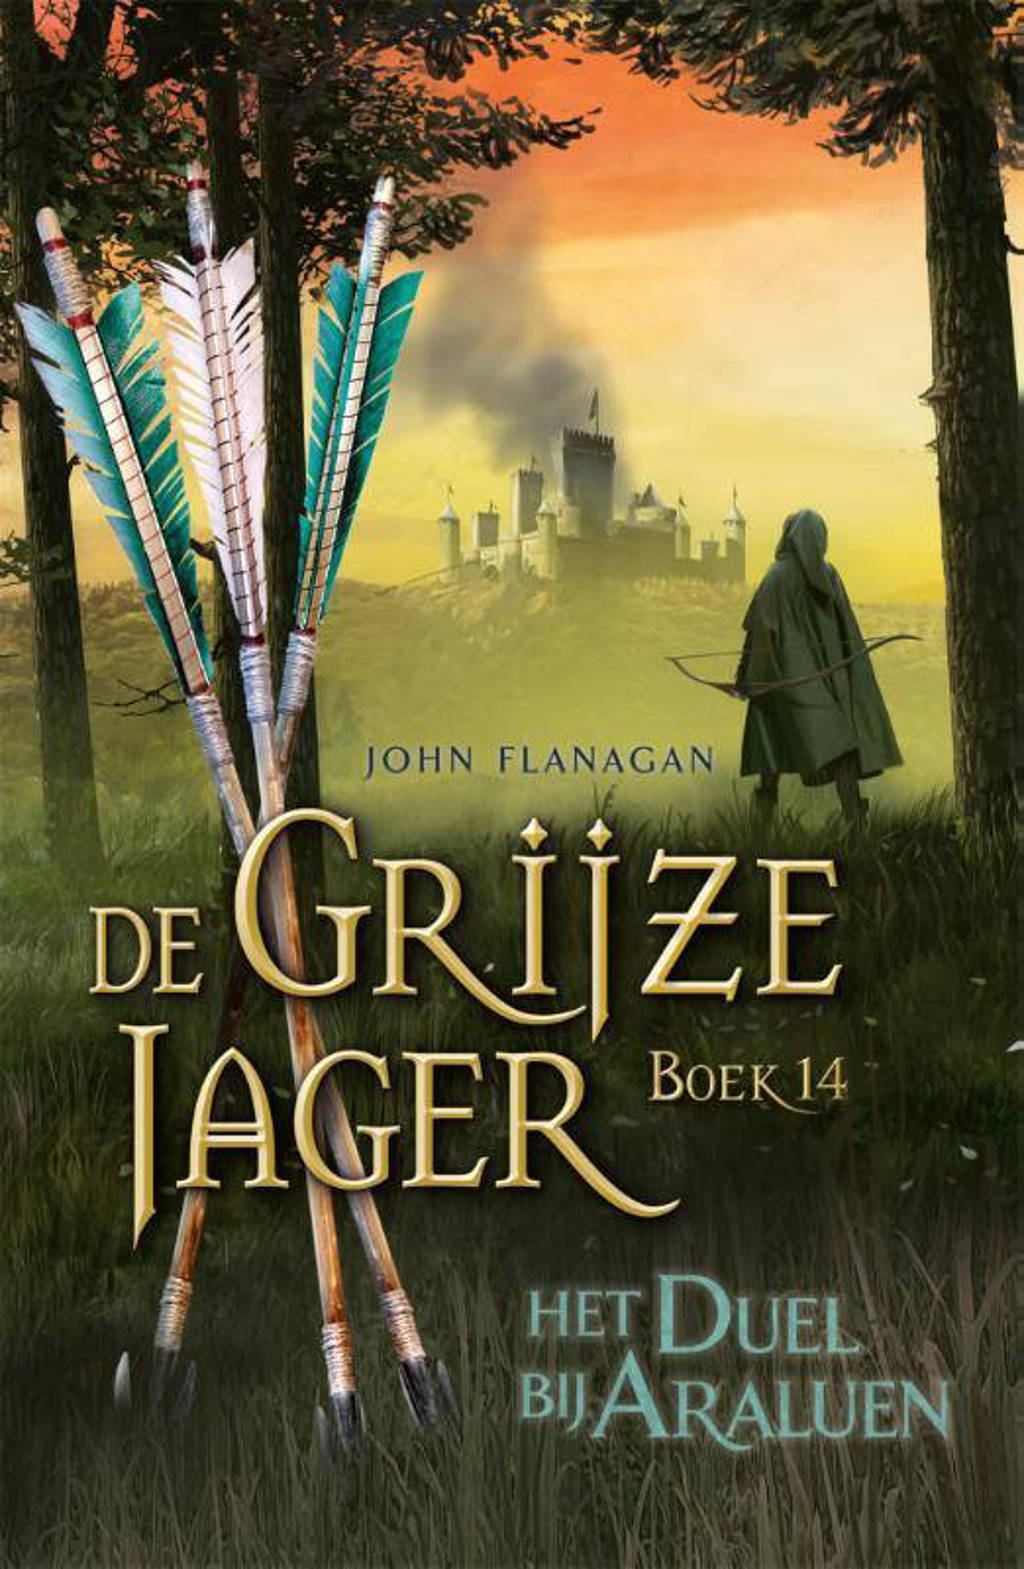 De Grijze Jager: Het duel bij Araluen - John Flanagan